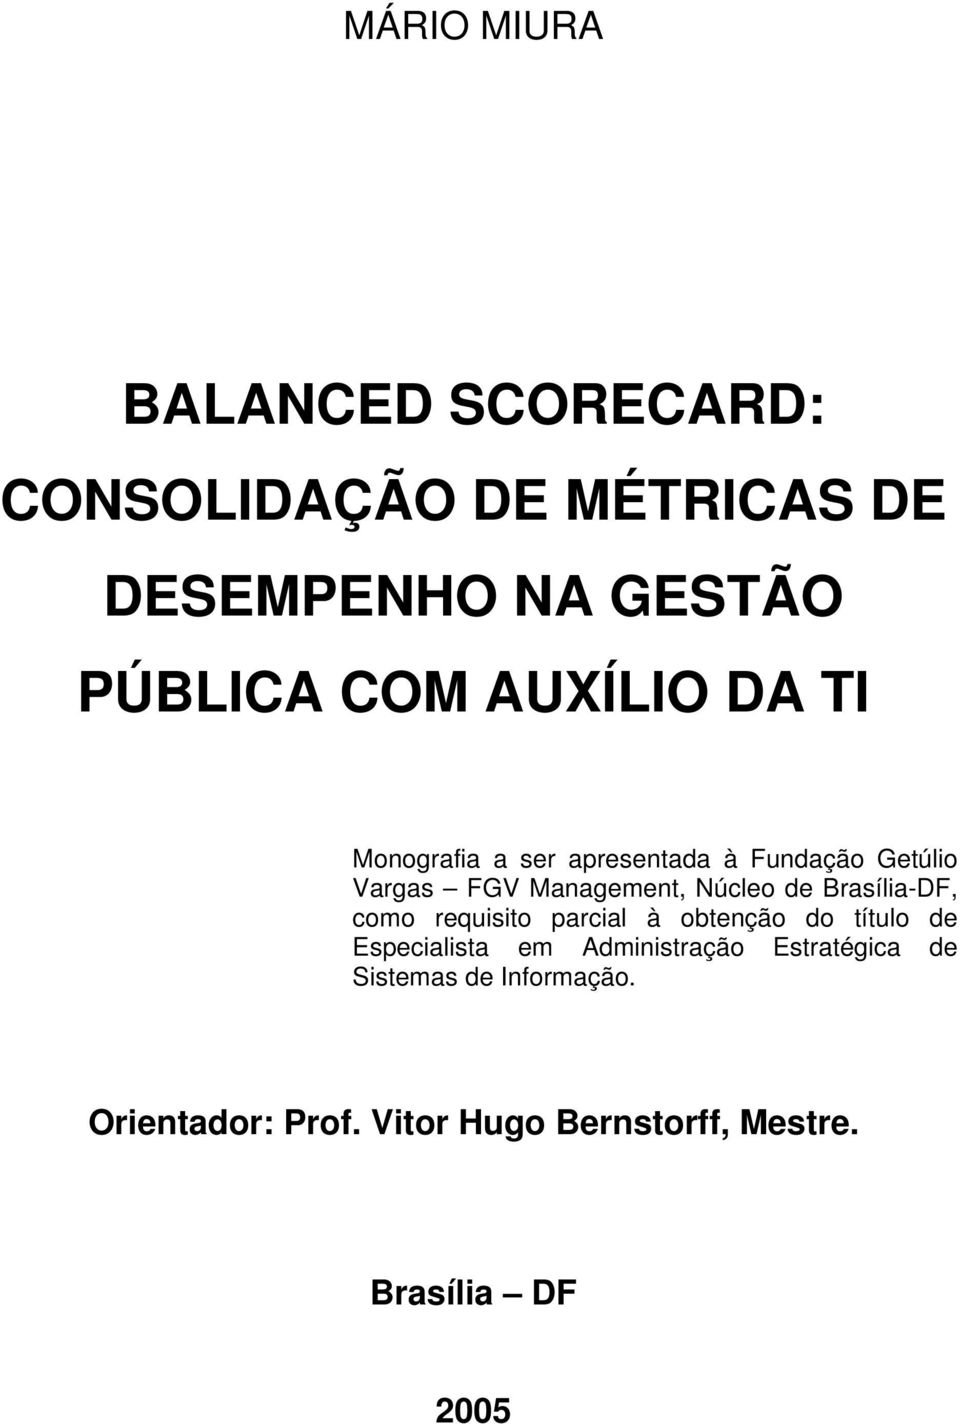 Brasília-DF, como requisito parcial à obtenção do título de Especialista em Administração